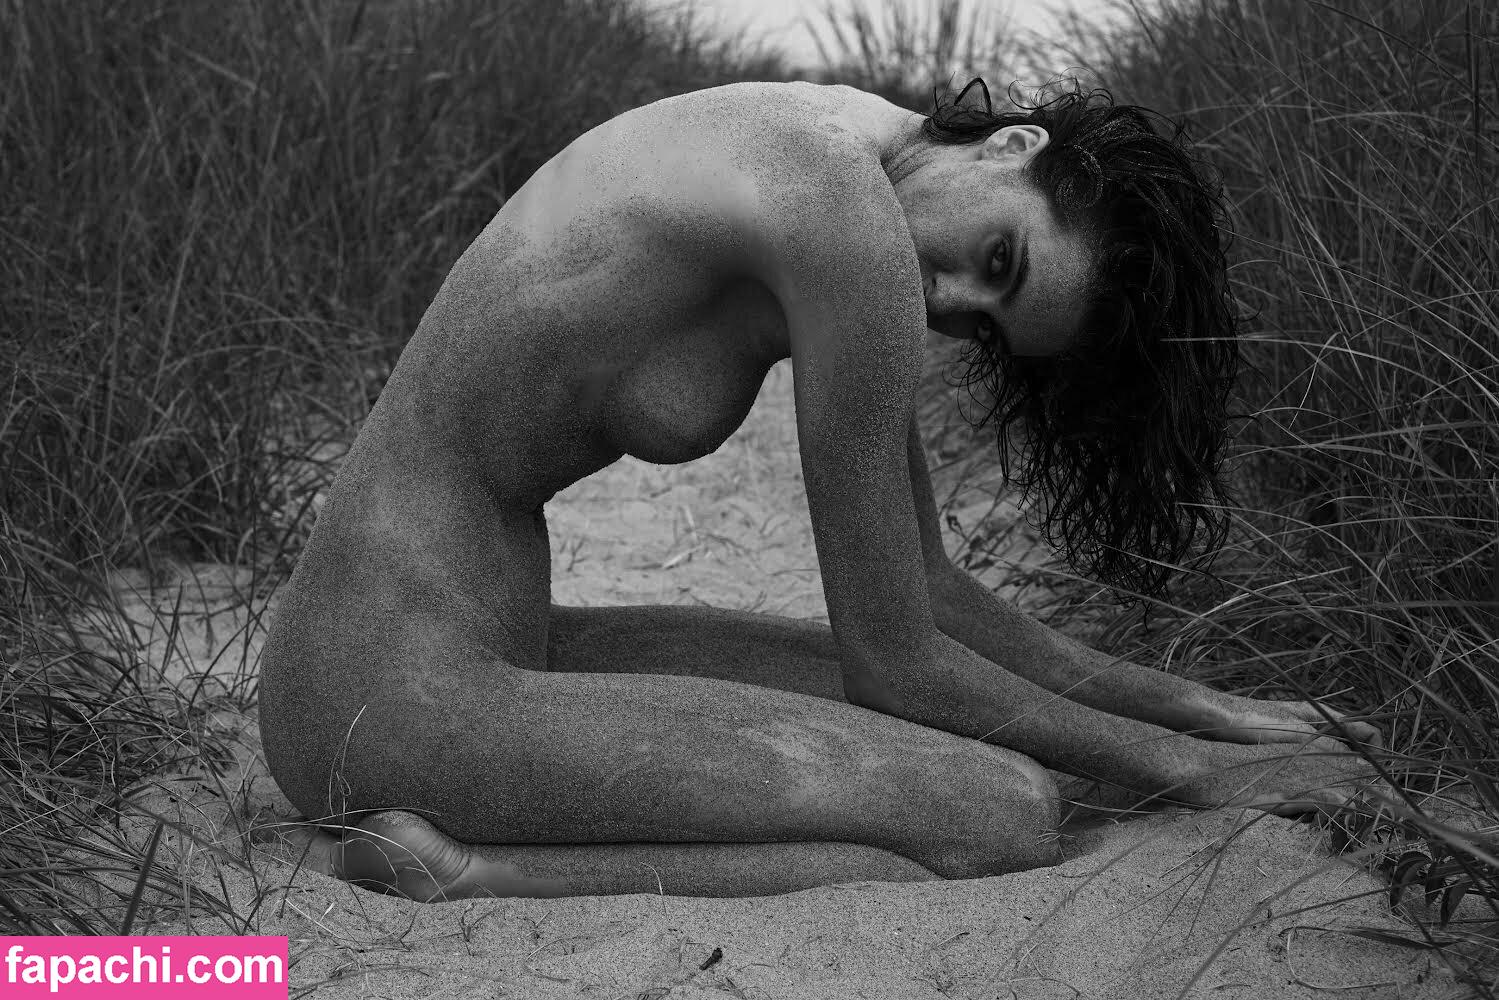 Brooke Deighton / brookedeighton leaked nude photo #0004 from OnlyFans/Patreon